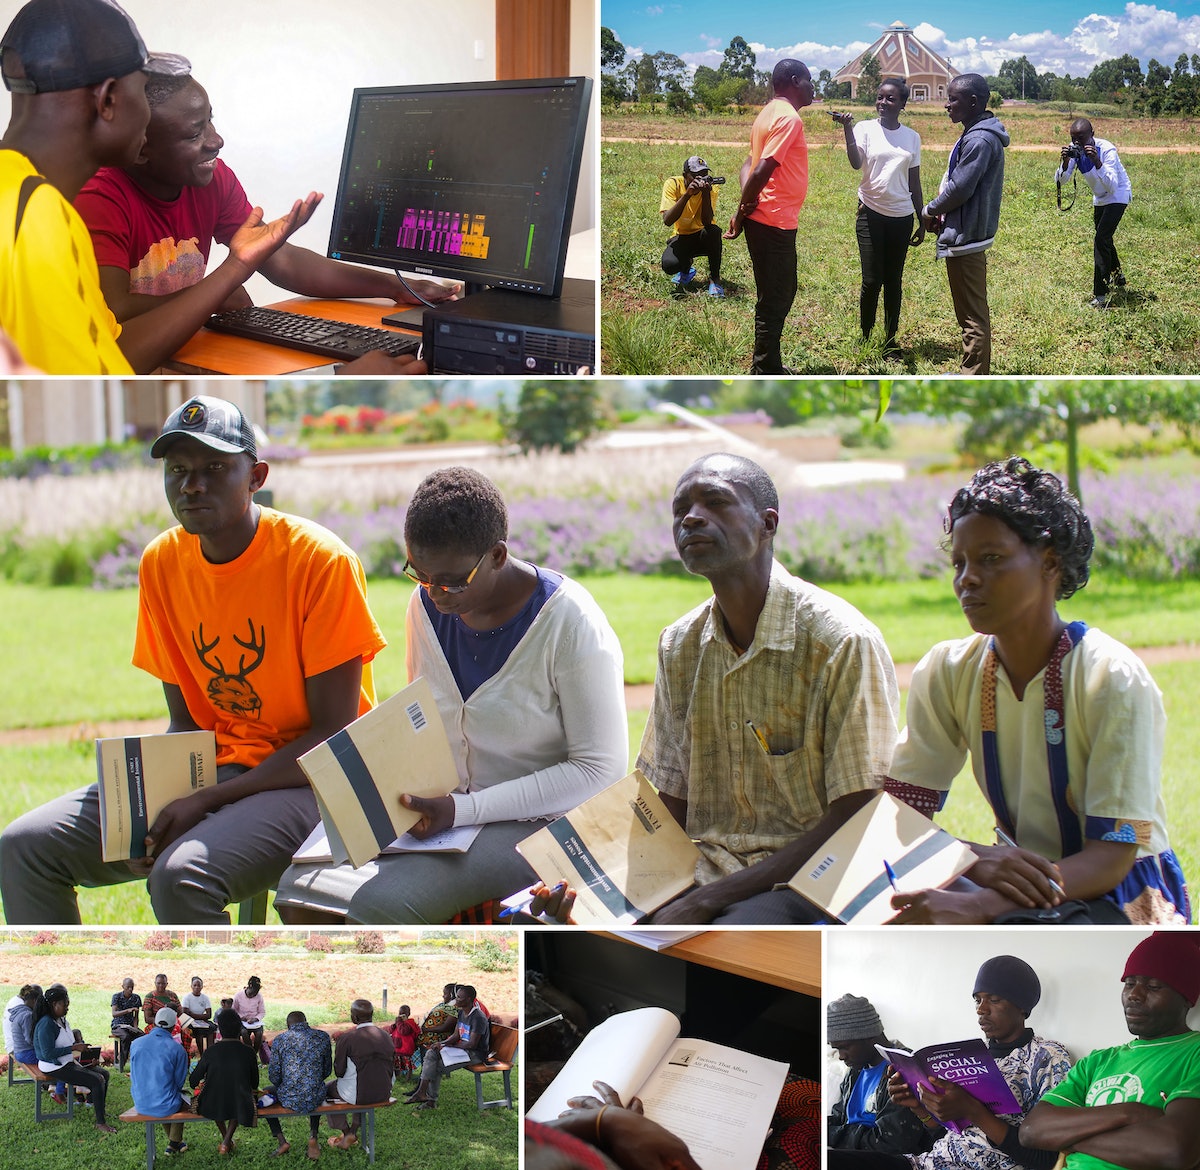 Au Kenya, un groupe de jeunes a enregistré et partagé des programmes par le biais de plateformes de messagerie qui tissent ensemble des aperçus et perspectives de personnes d’horizons divers, enrichissant les conversations sur les thèmes du progrès social.